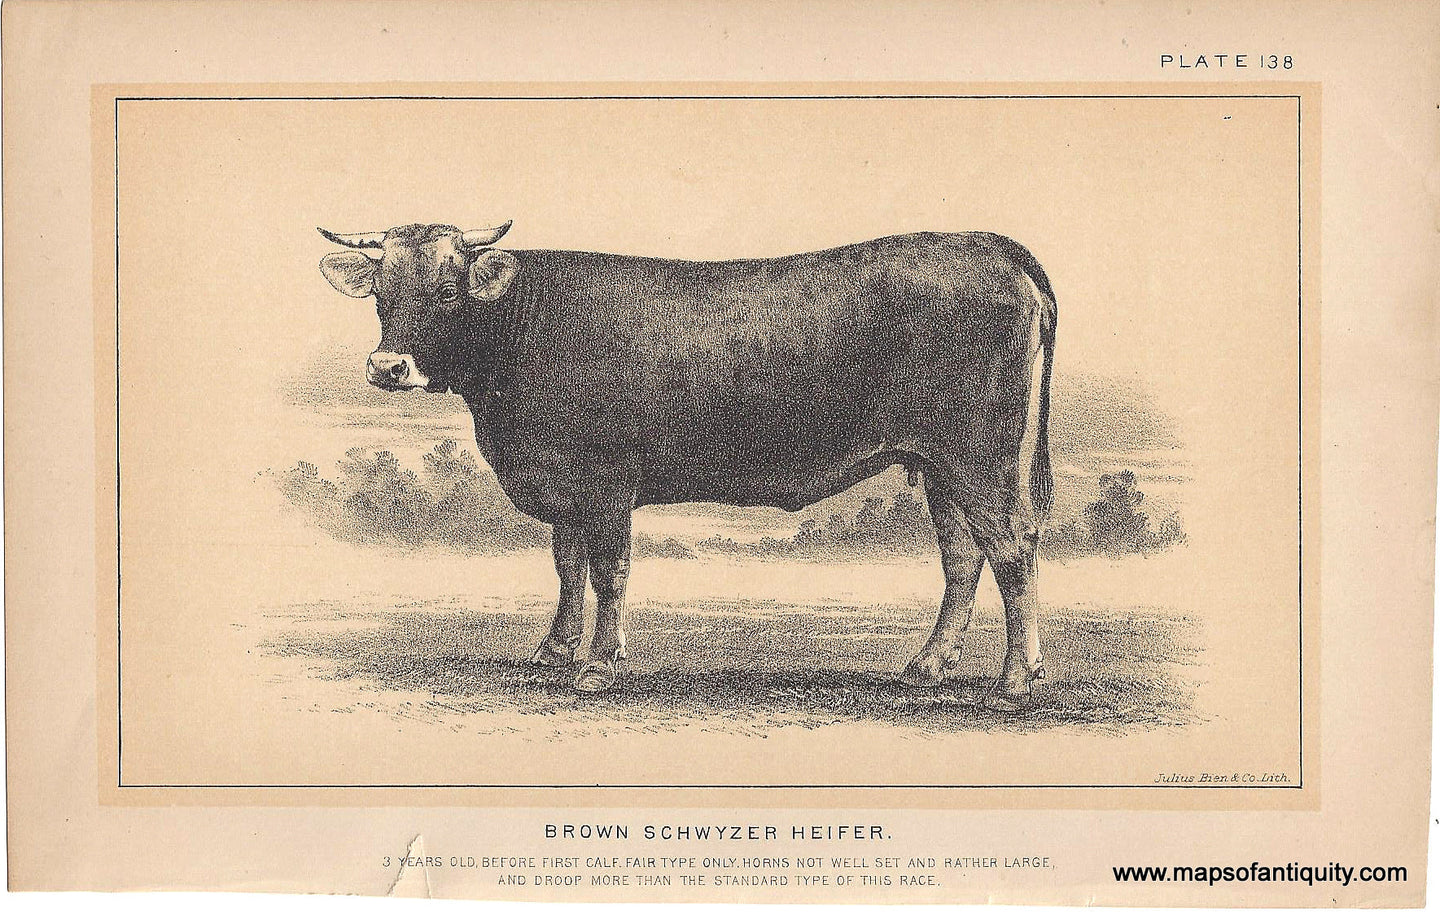 Genuine-Antique-Print-Brown-Schwyzer-Heifer-1888-Julius-Bien-Co-Maps-Of-Antiquity